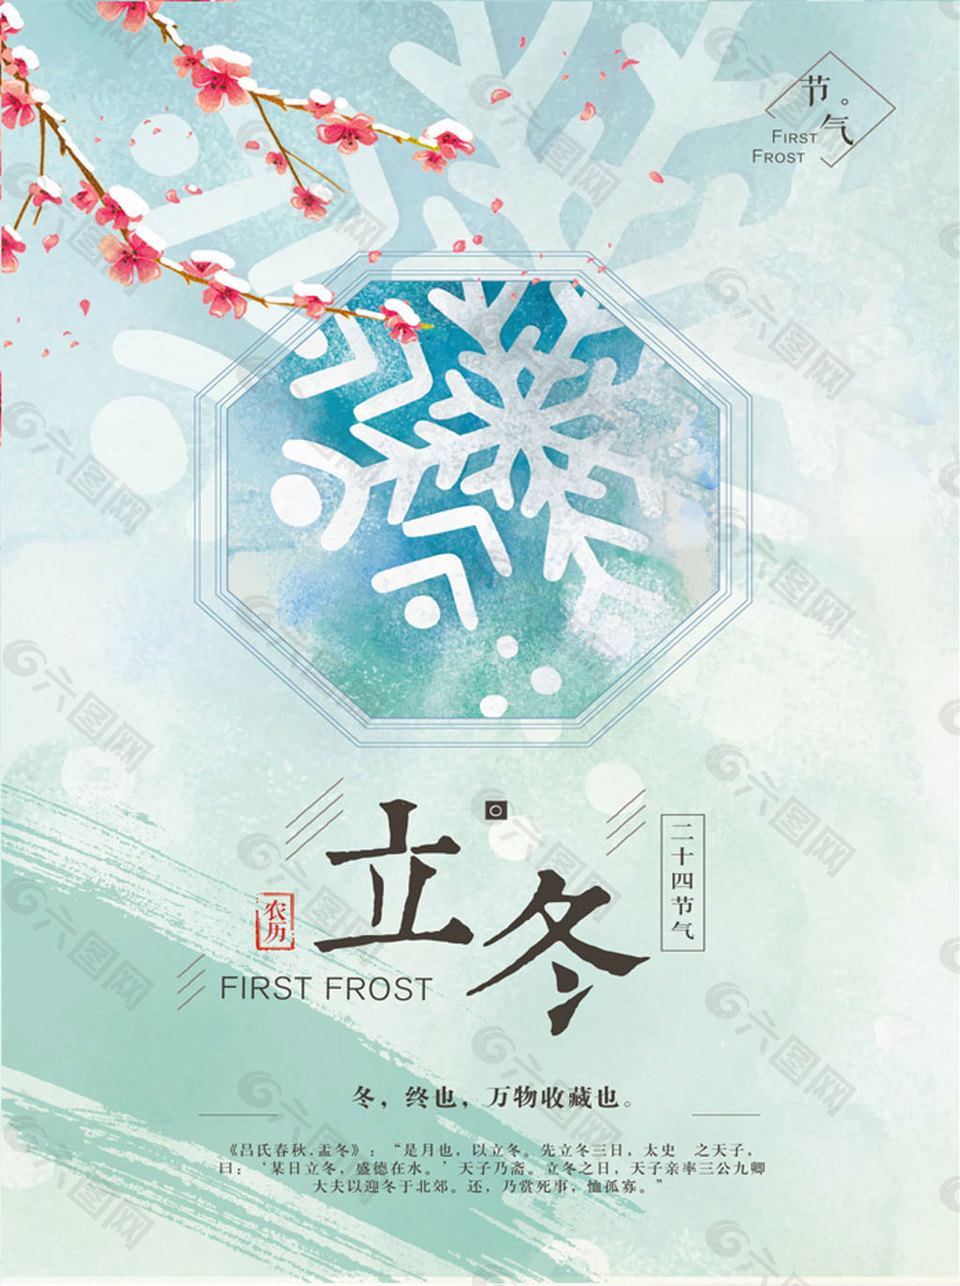 冬季立冬节日海报设计